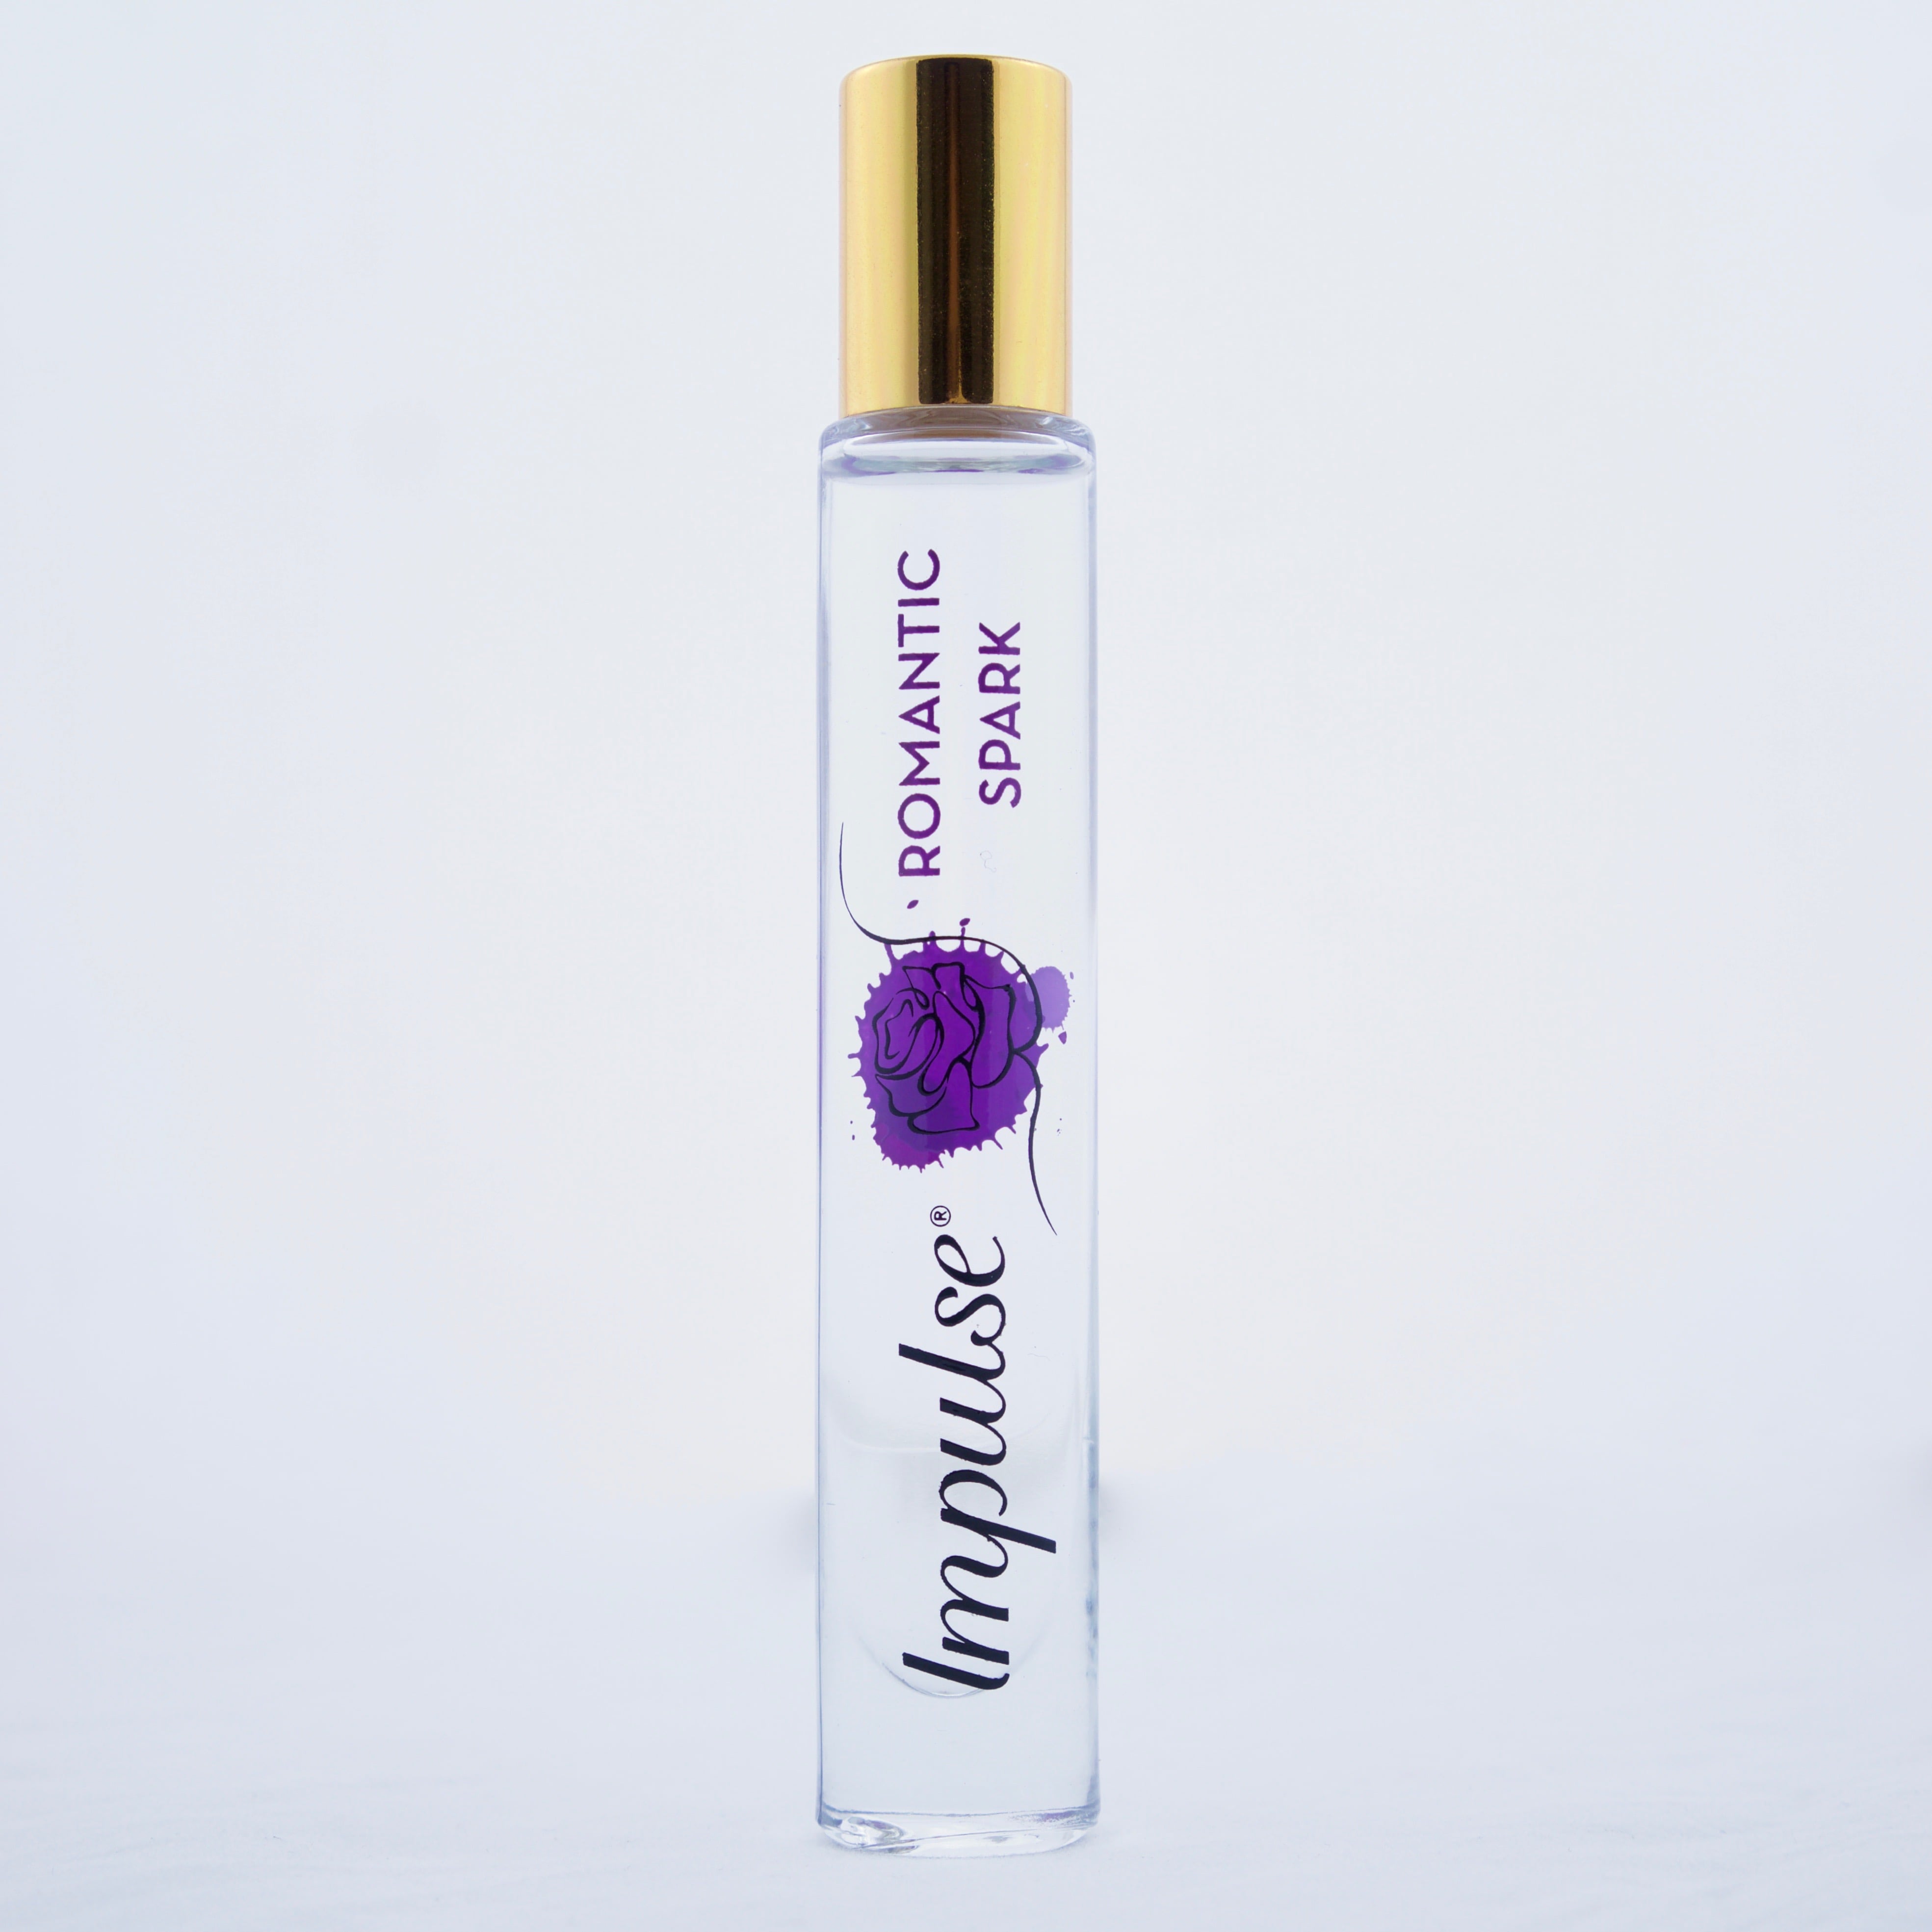 Impulse roller ball perfume vial